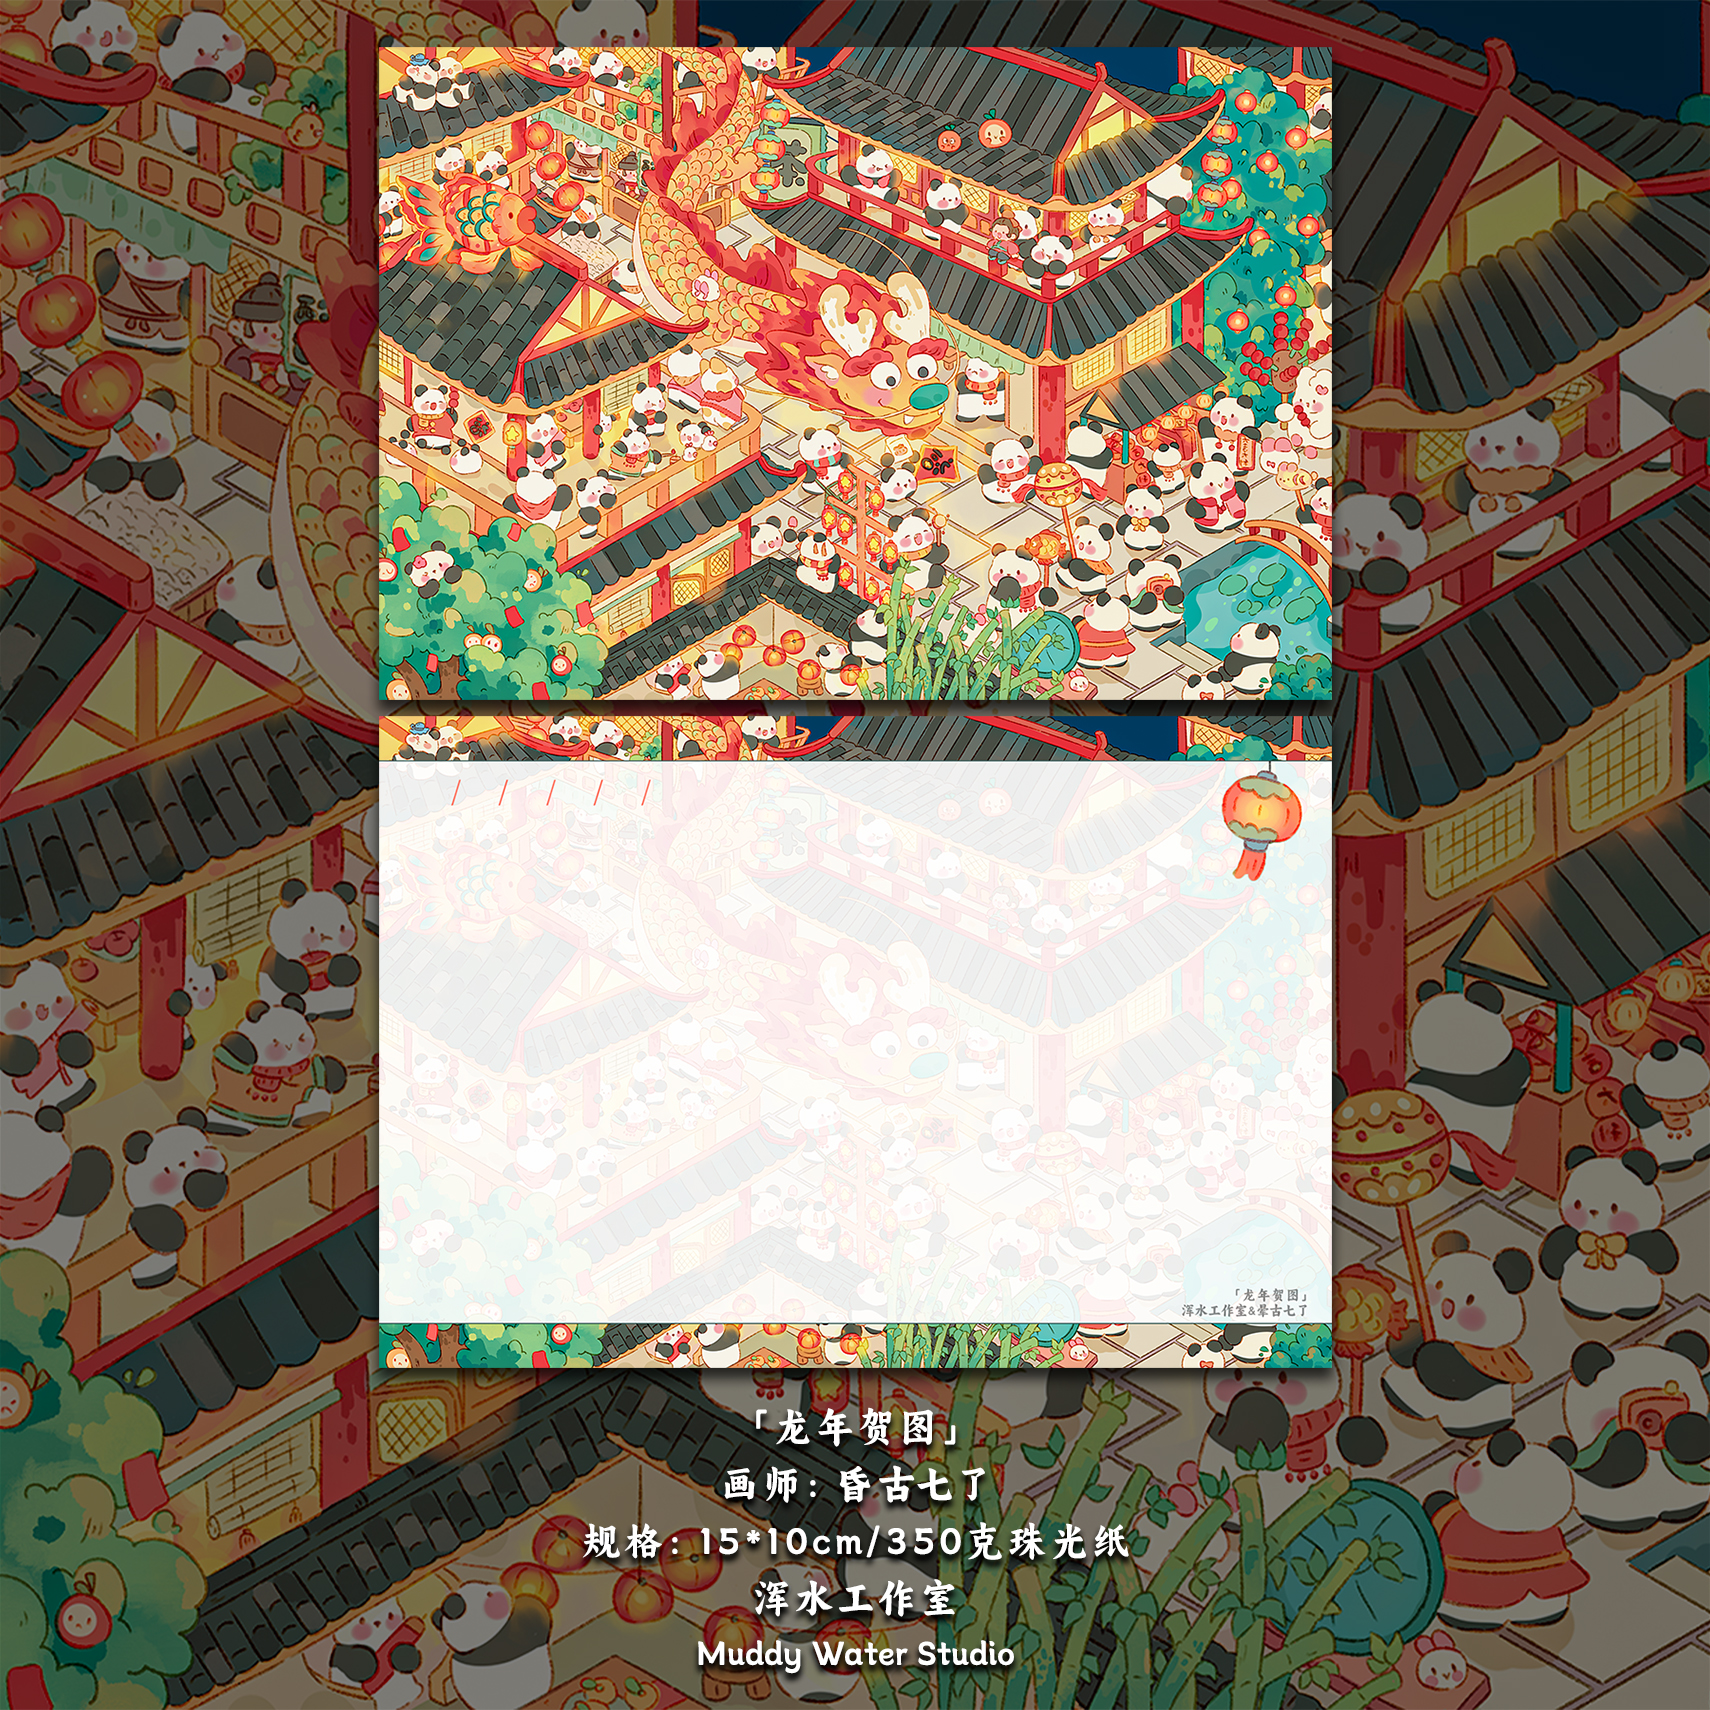 「龙年贺图」原创龙年新年明信片春节插画手绘创意贺卡